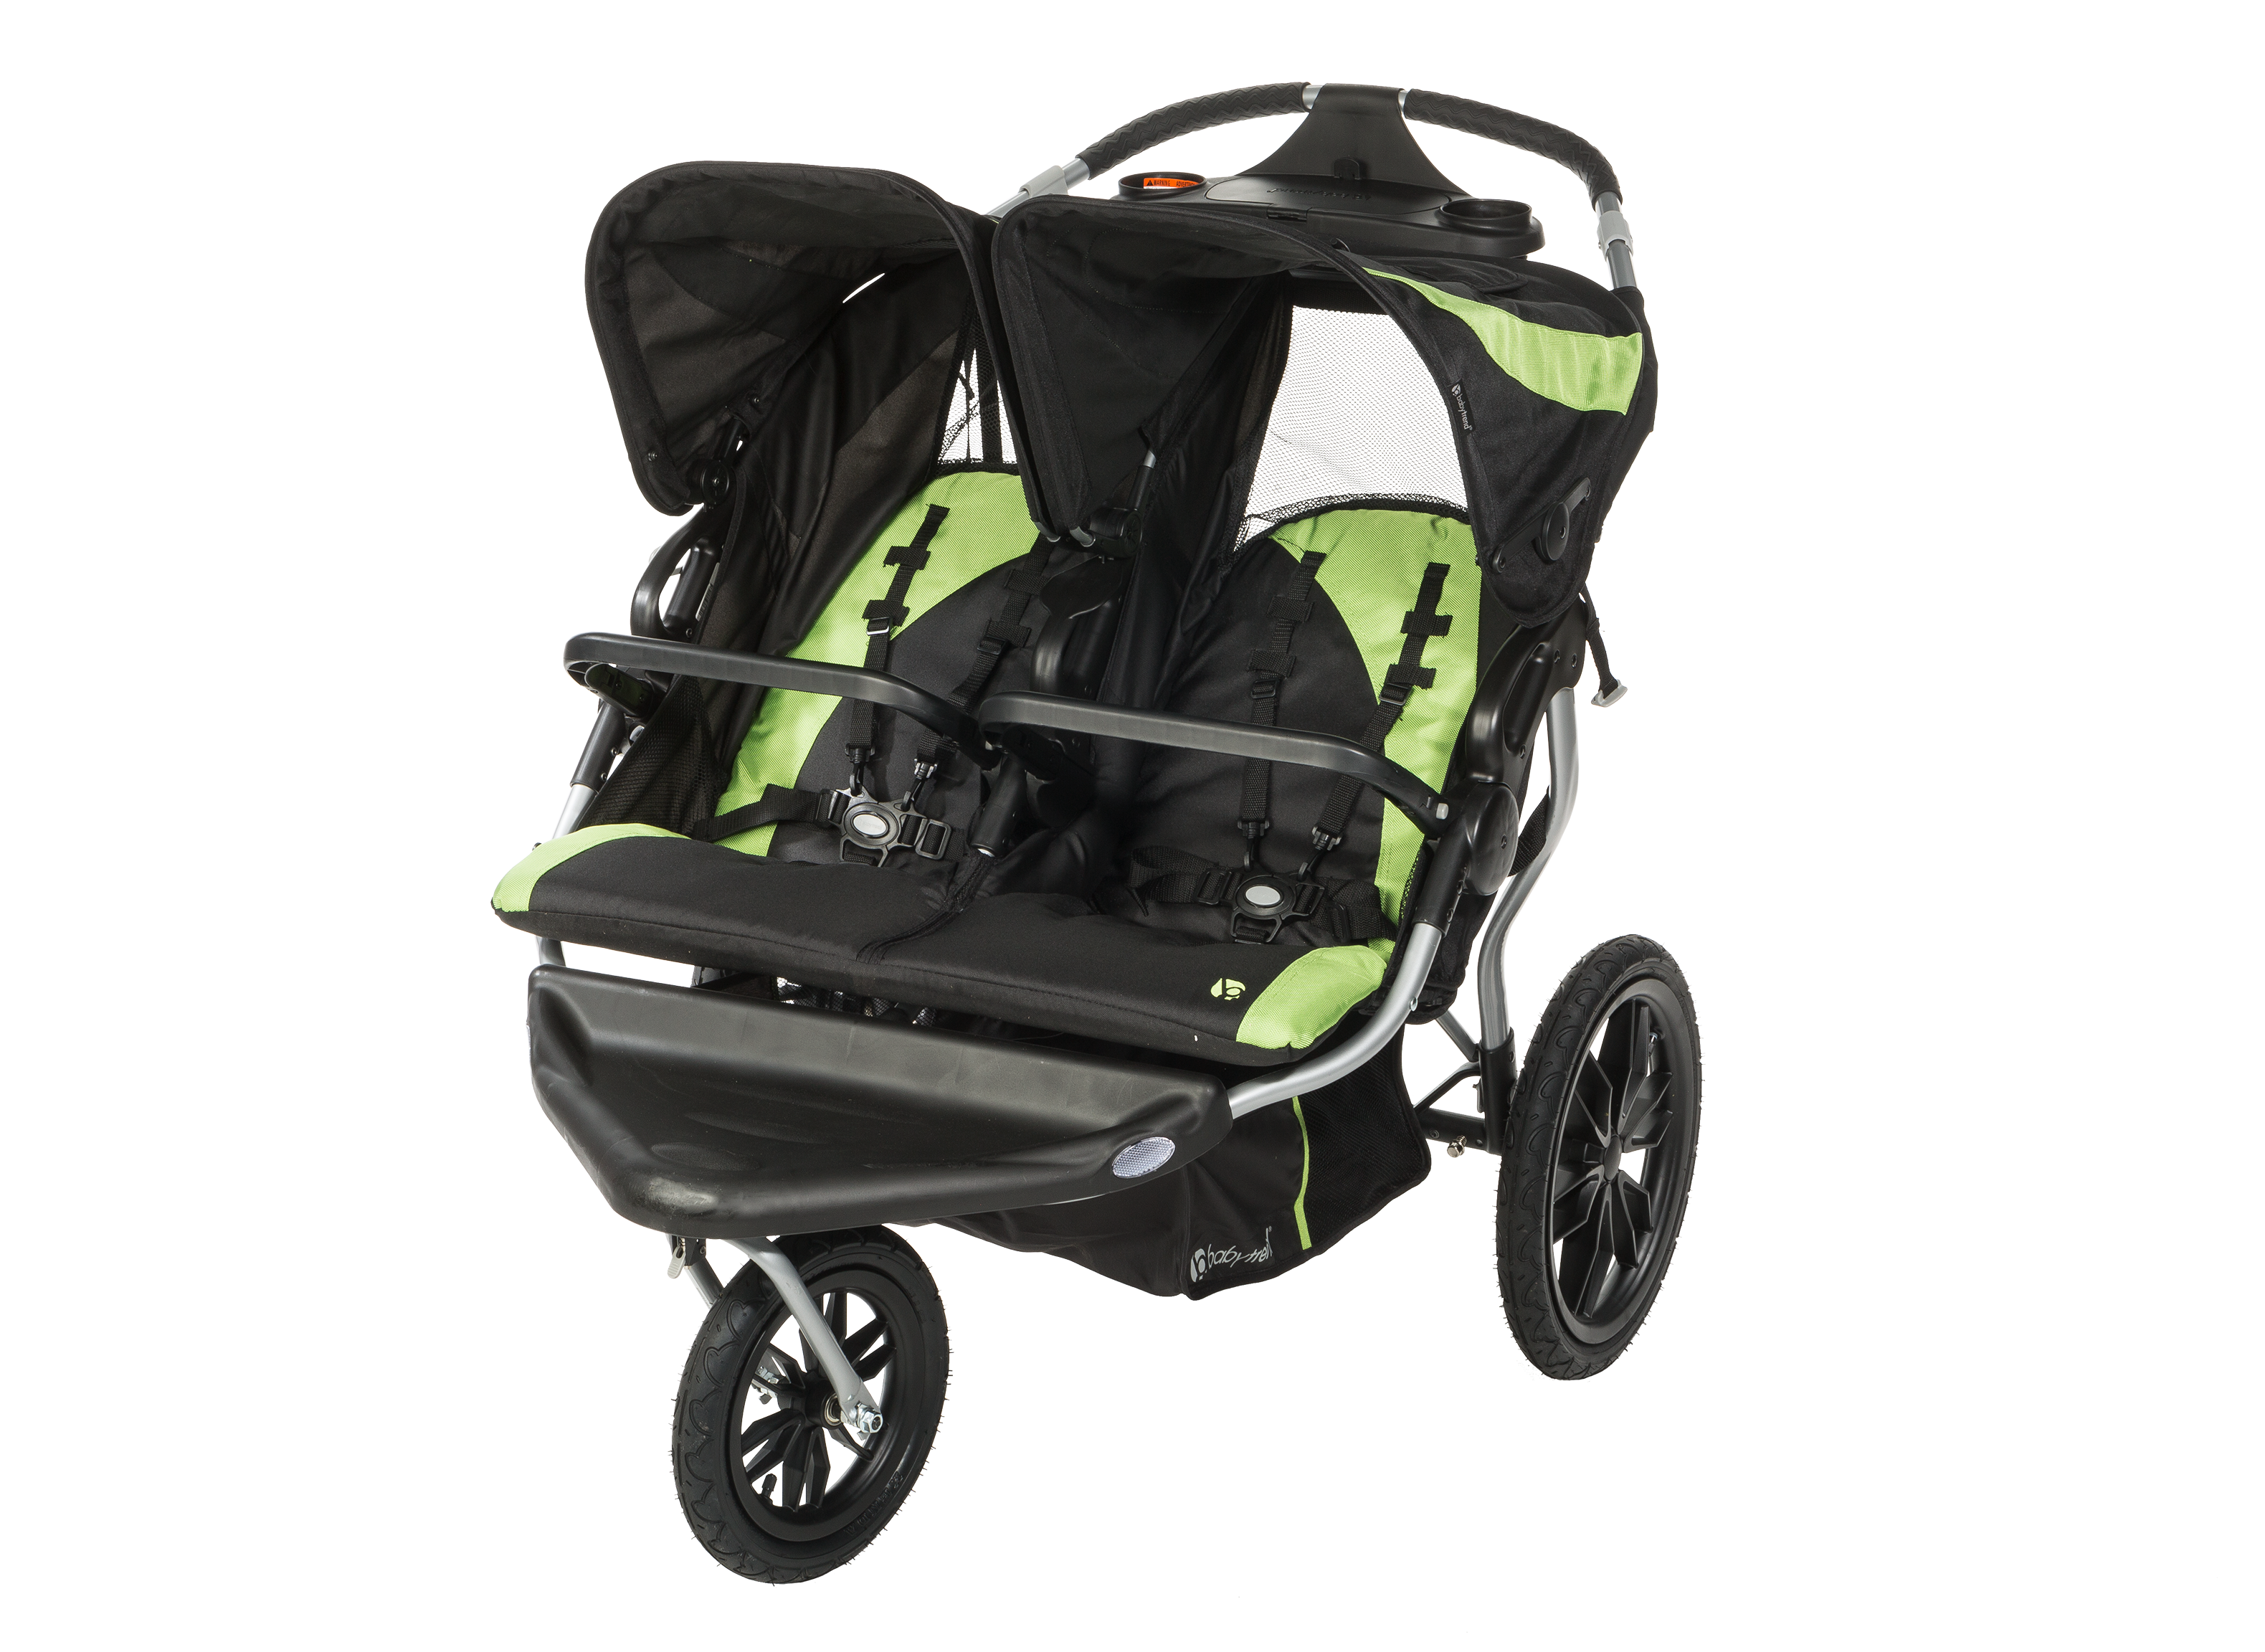 klokke Slapper af efterklang Baby Trend Navigator Lite Double Jogger Stroller Review - Consumer Reports